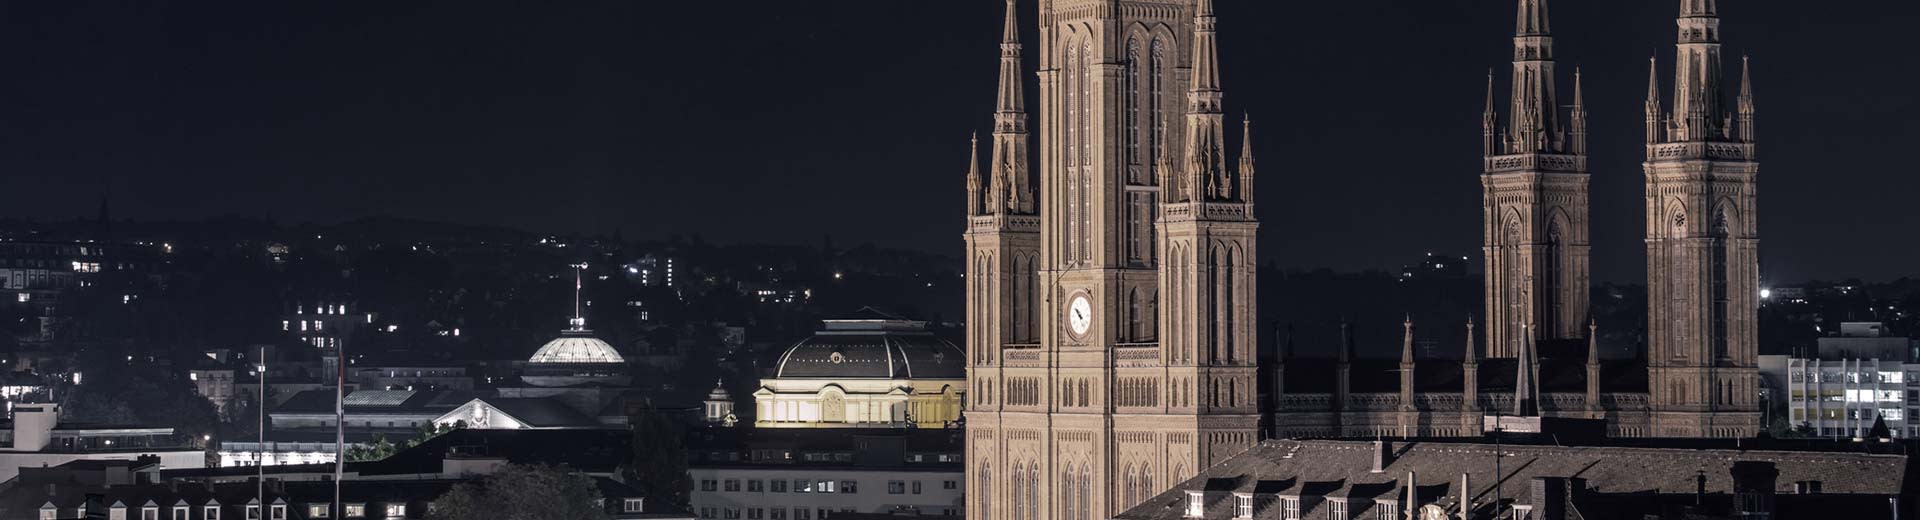 El mundialmente famoso Marktkirche domina el primer plano de Wiesbaden, con las luces de los edificios en la distancia.